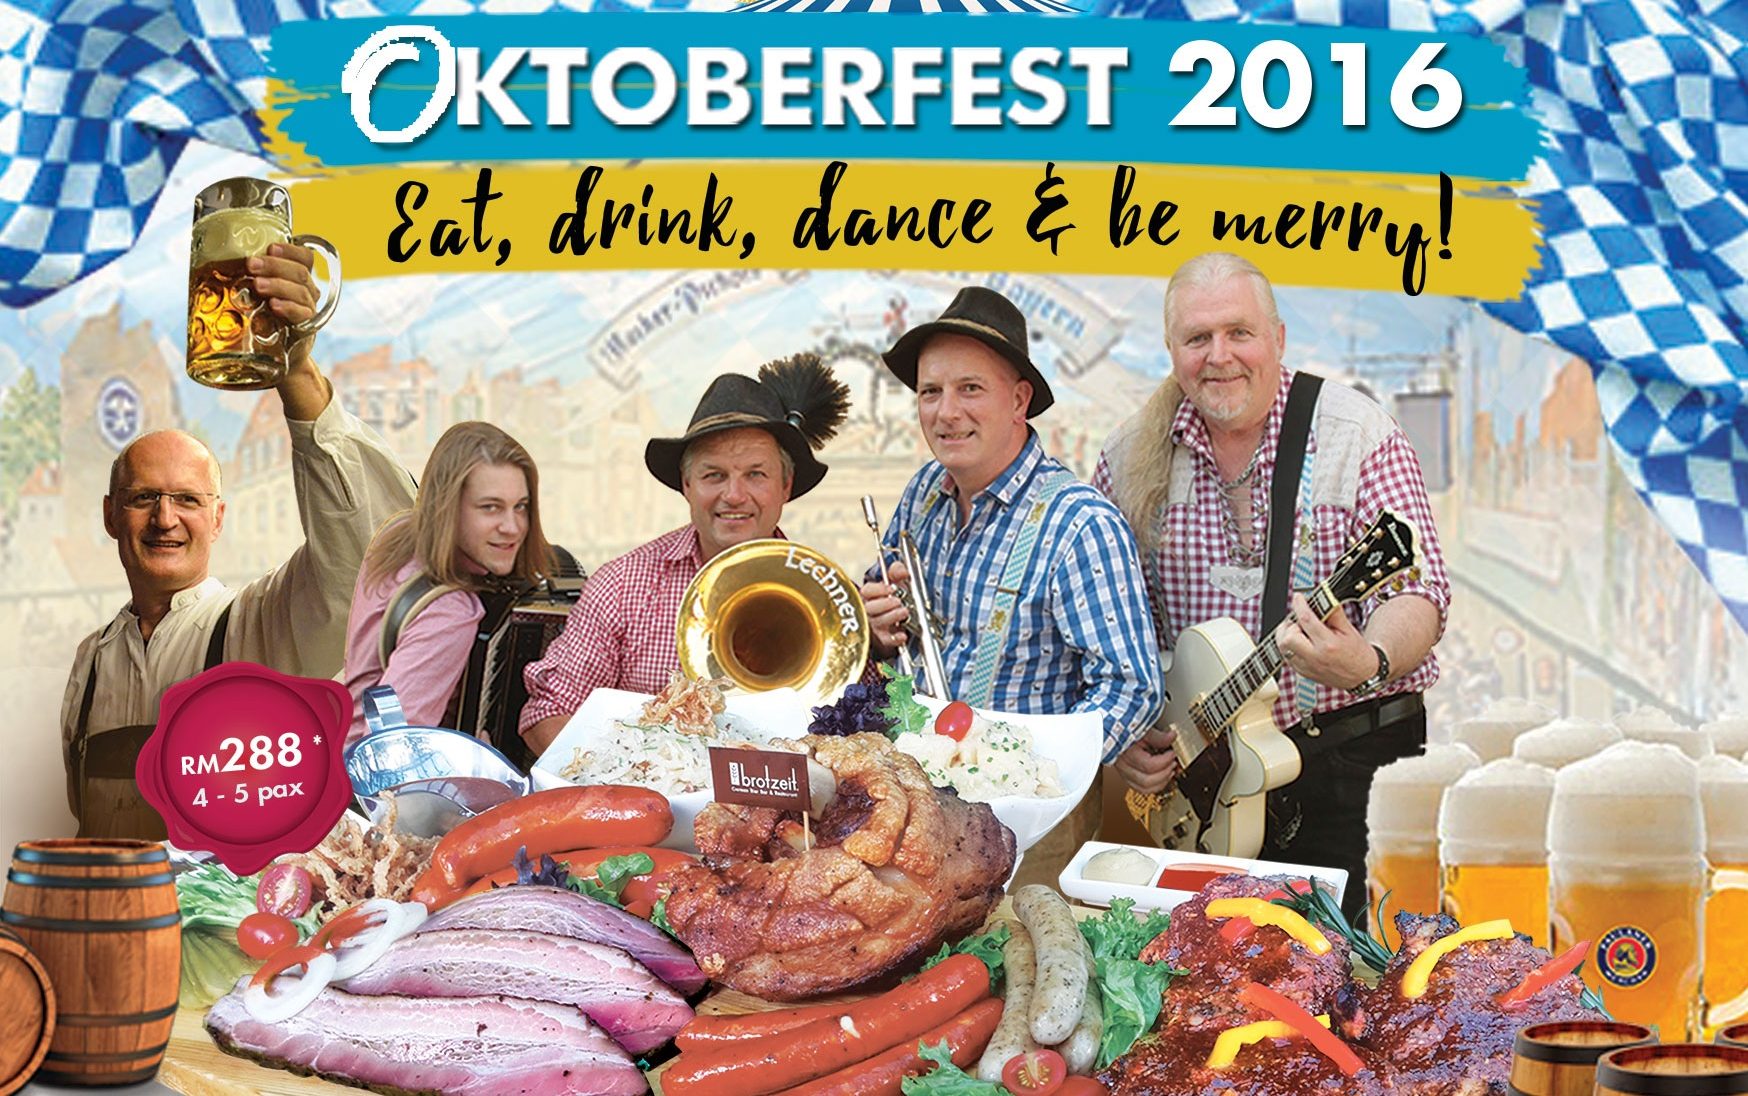 Promotion: Celebrate Oktoberfest 2016 with Brotzeit